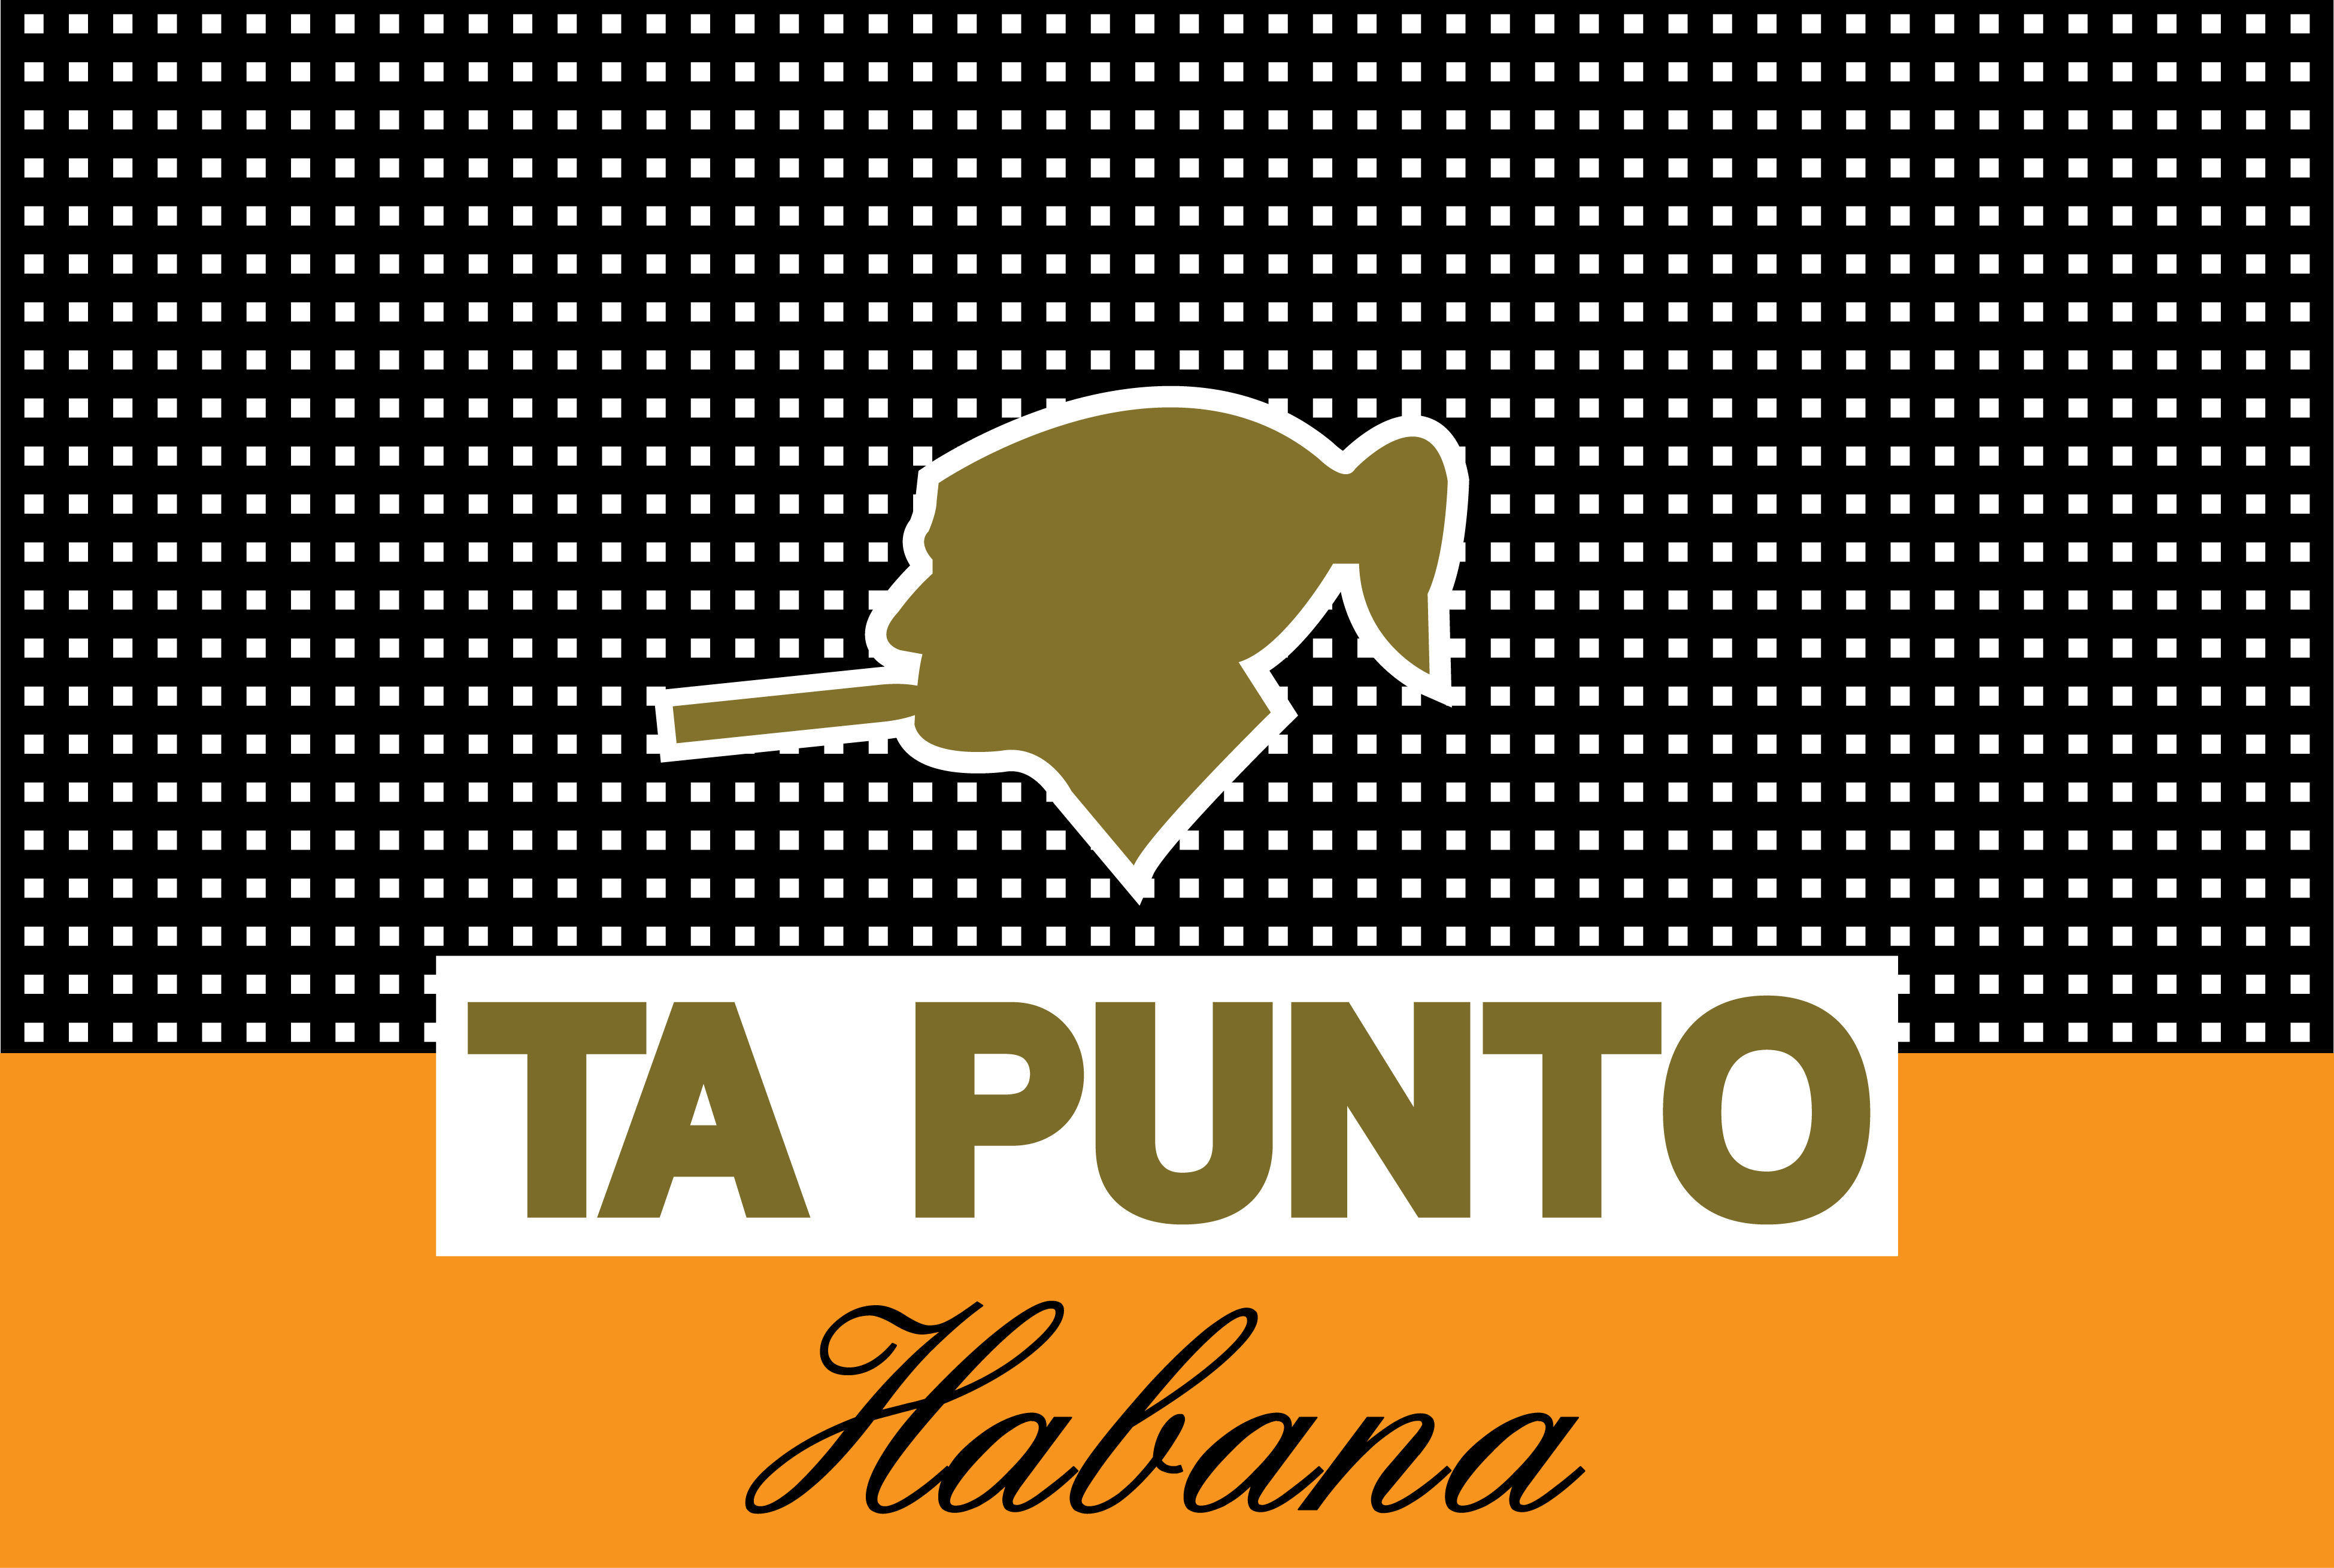 ANTXOEN BERTSOA (63) – Habana Ta Punto & BTN17 Amurrio